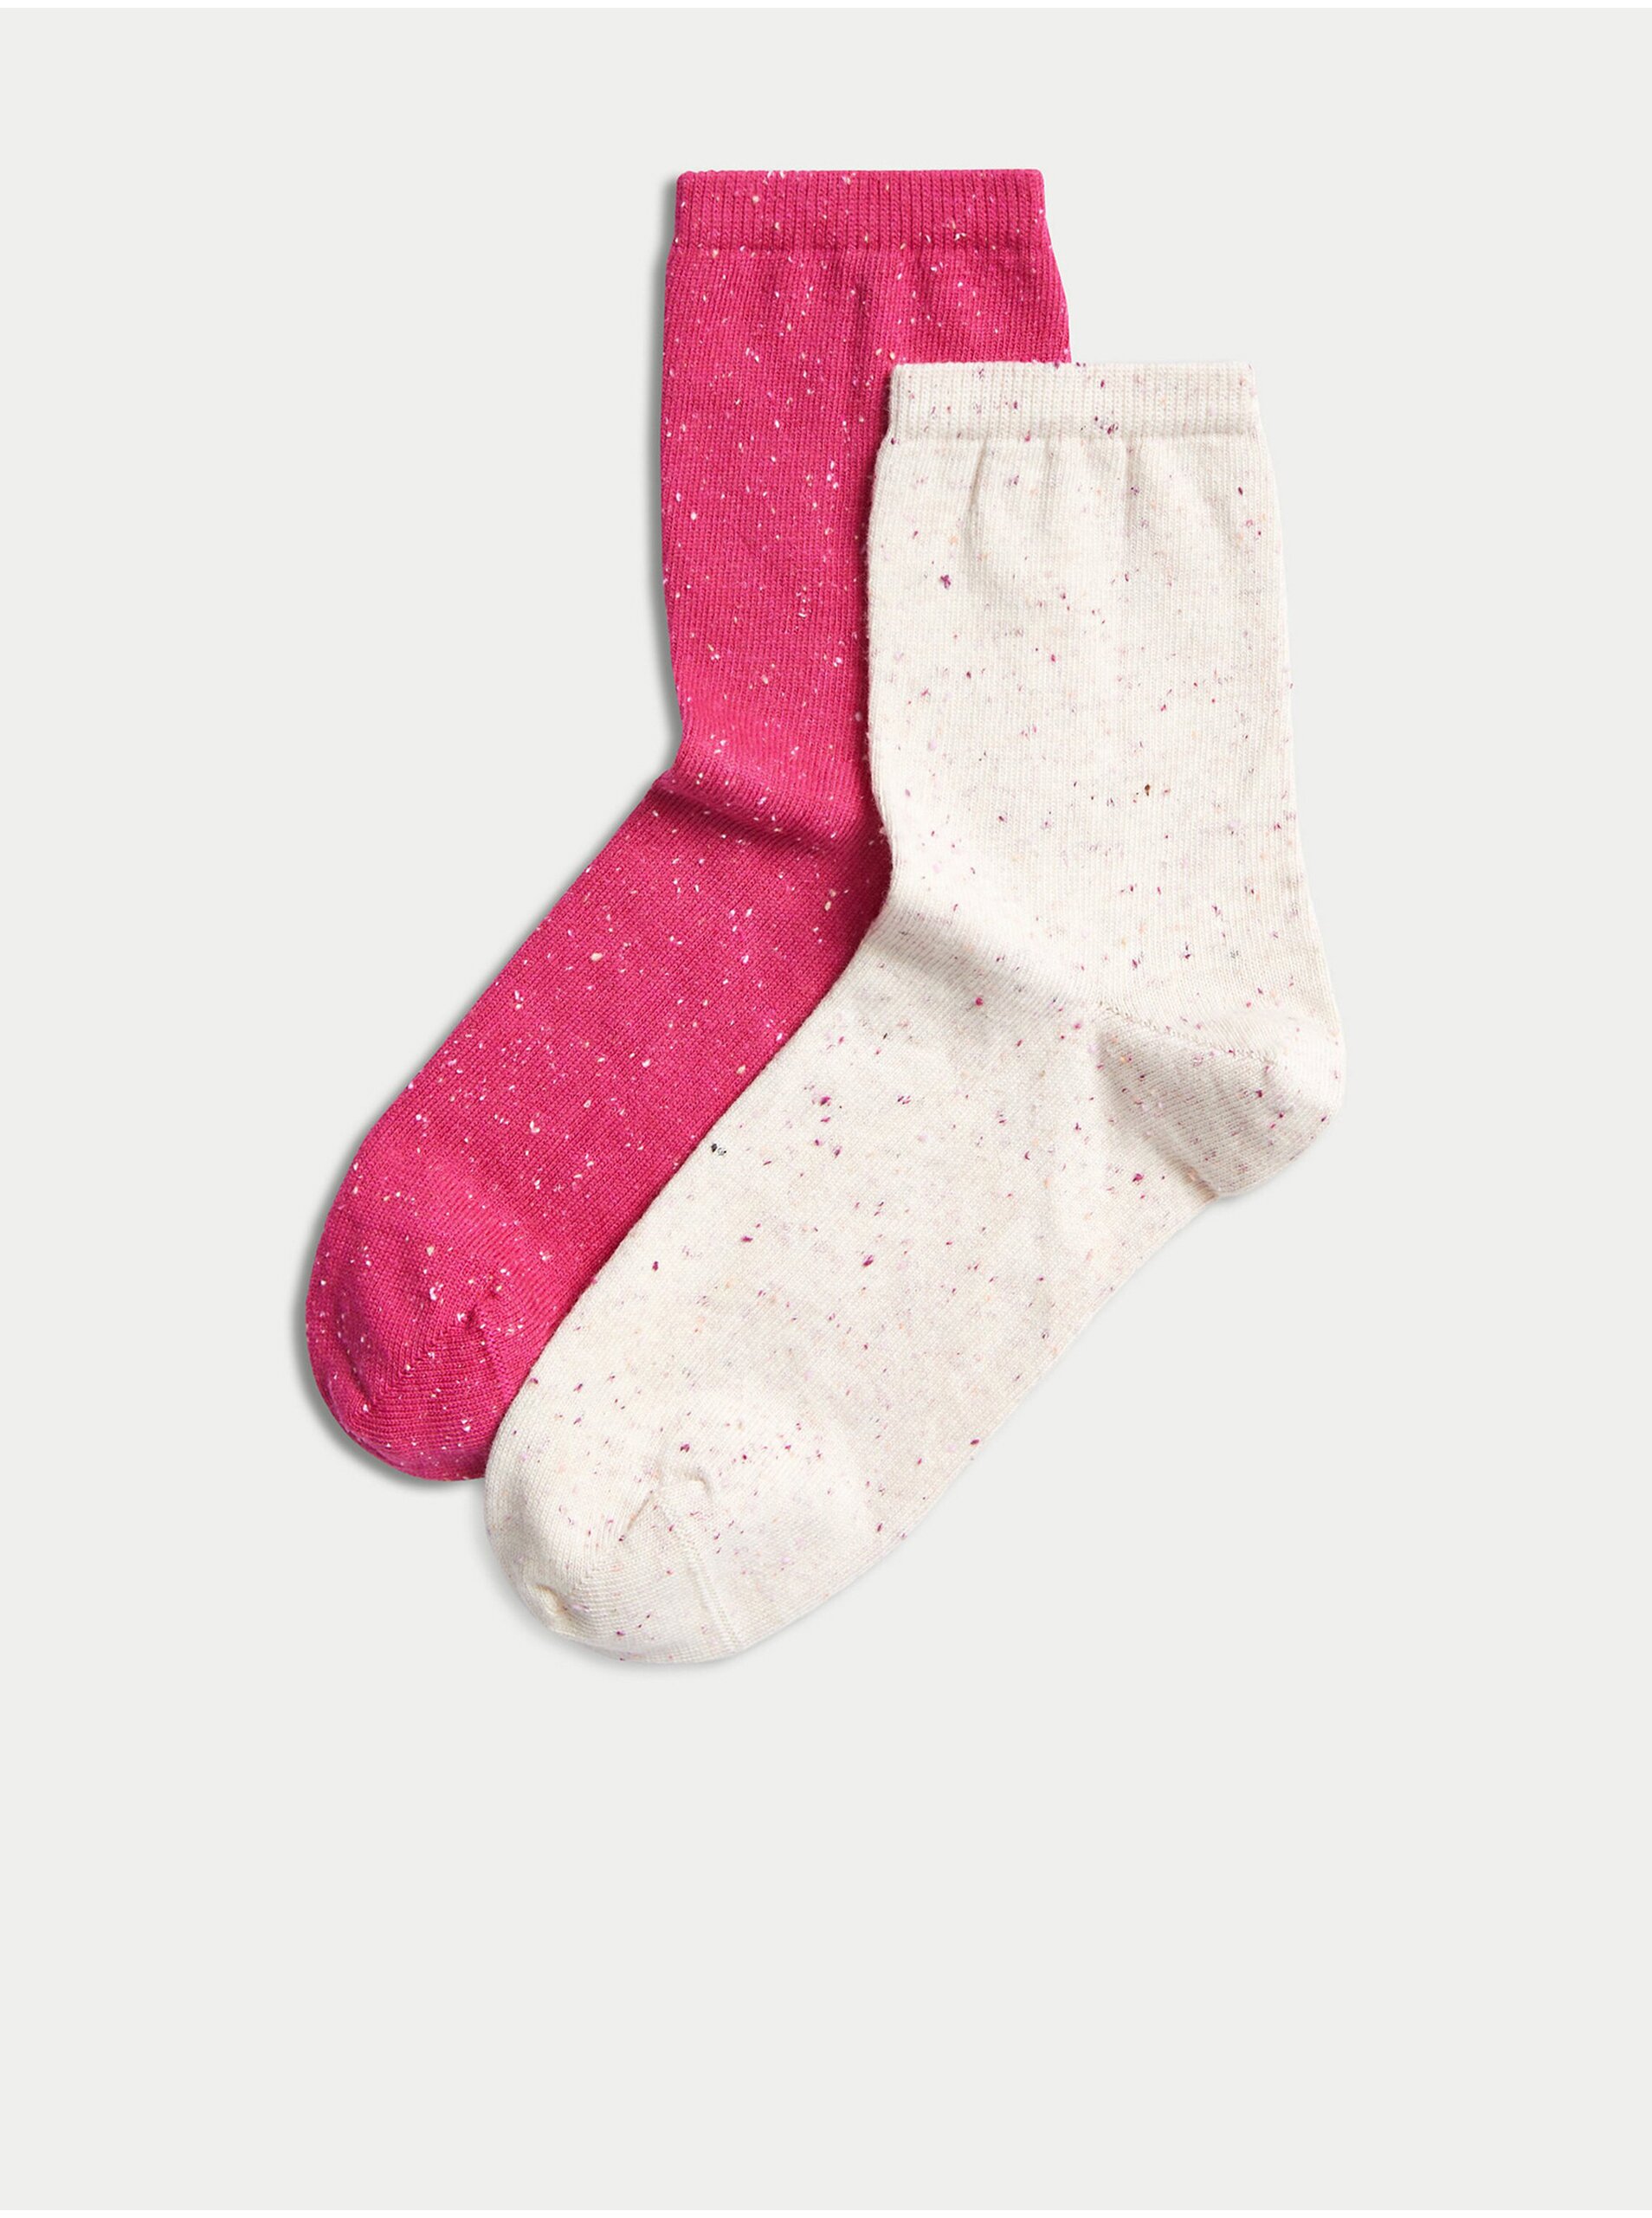 Lacno Súprava dvoch párov dámskych vzorovaných ponožiek v béžovej a ružovej farbe Marks & Spencer